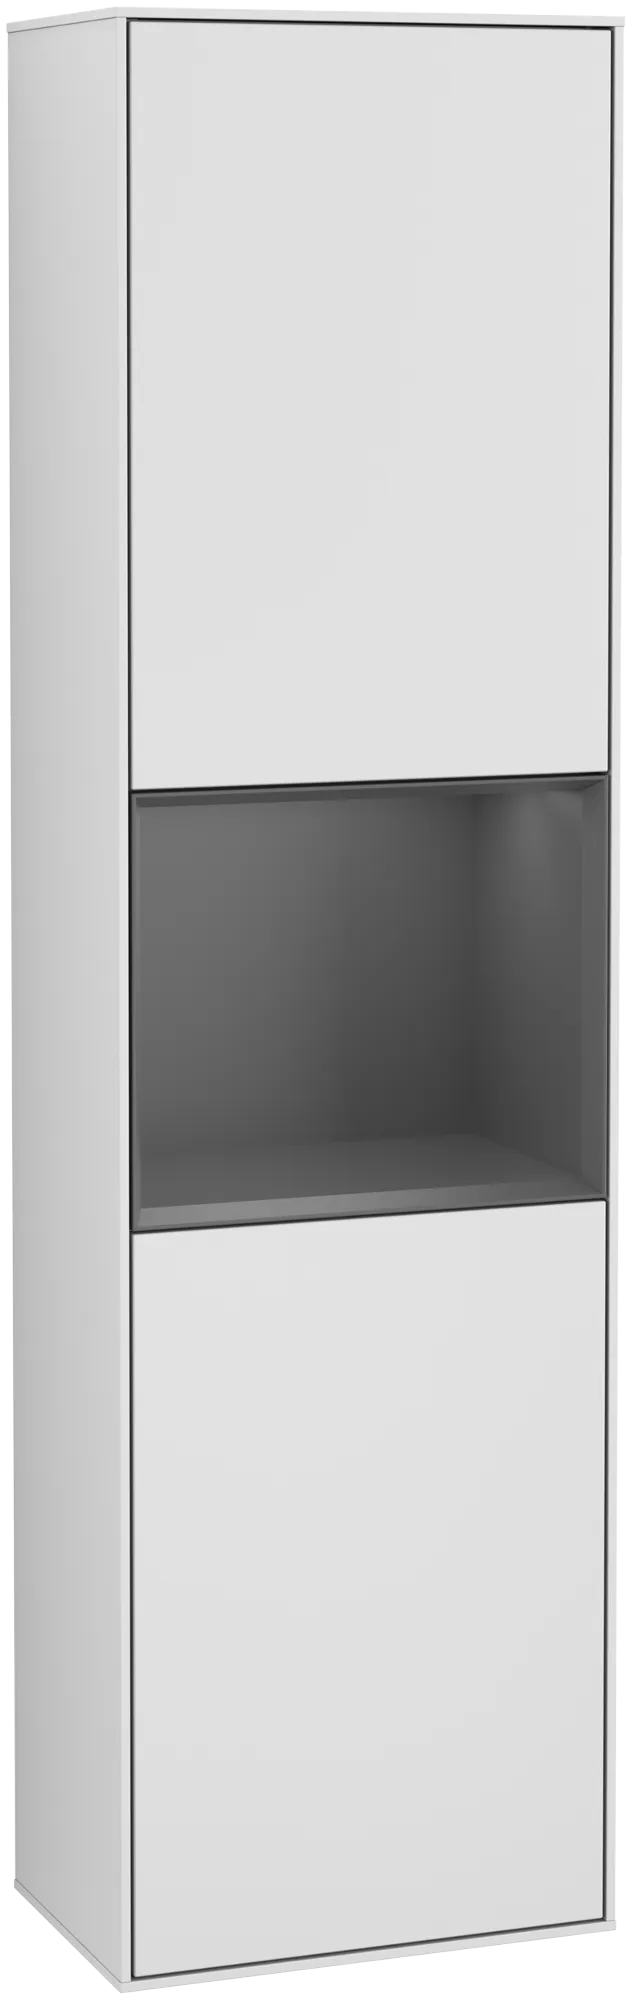 Bild von VILLEROY BOCH Finion Hochschrank, mit Beleuchtung, 2 Türen, 418 x 1516 x 270 mm, White Matt Lacquer / Anthracite Matt Lacquer #G470GKMT